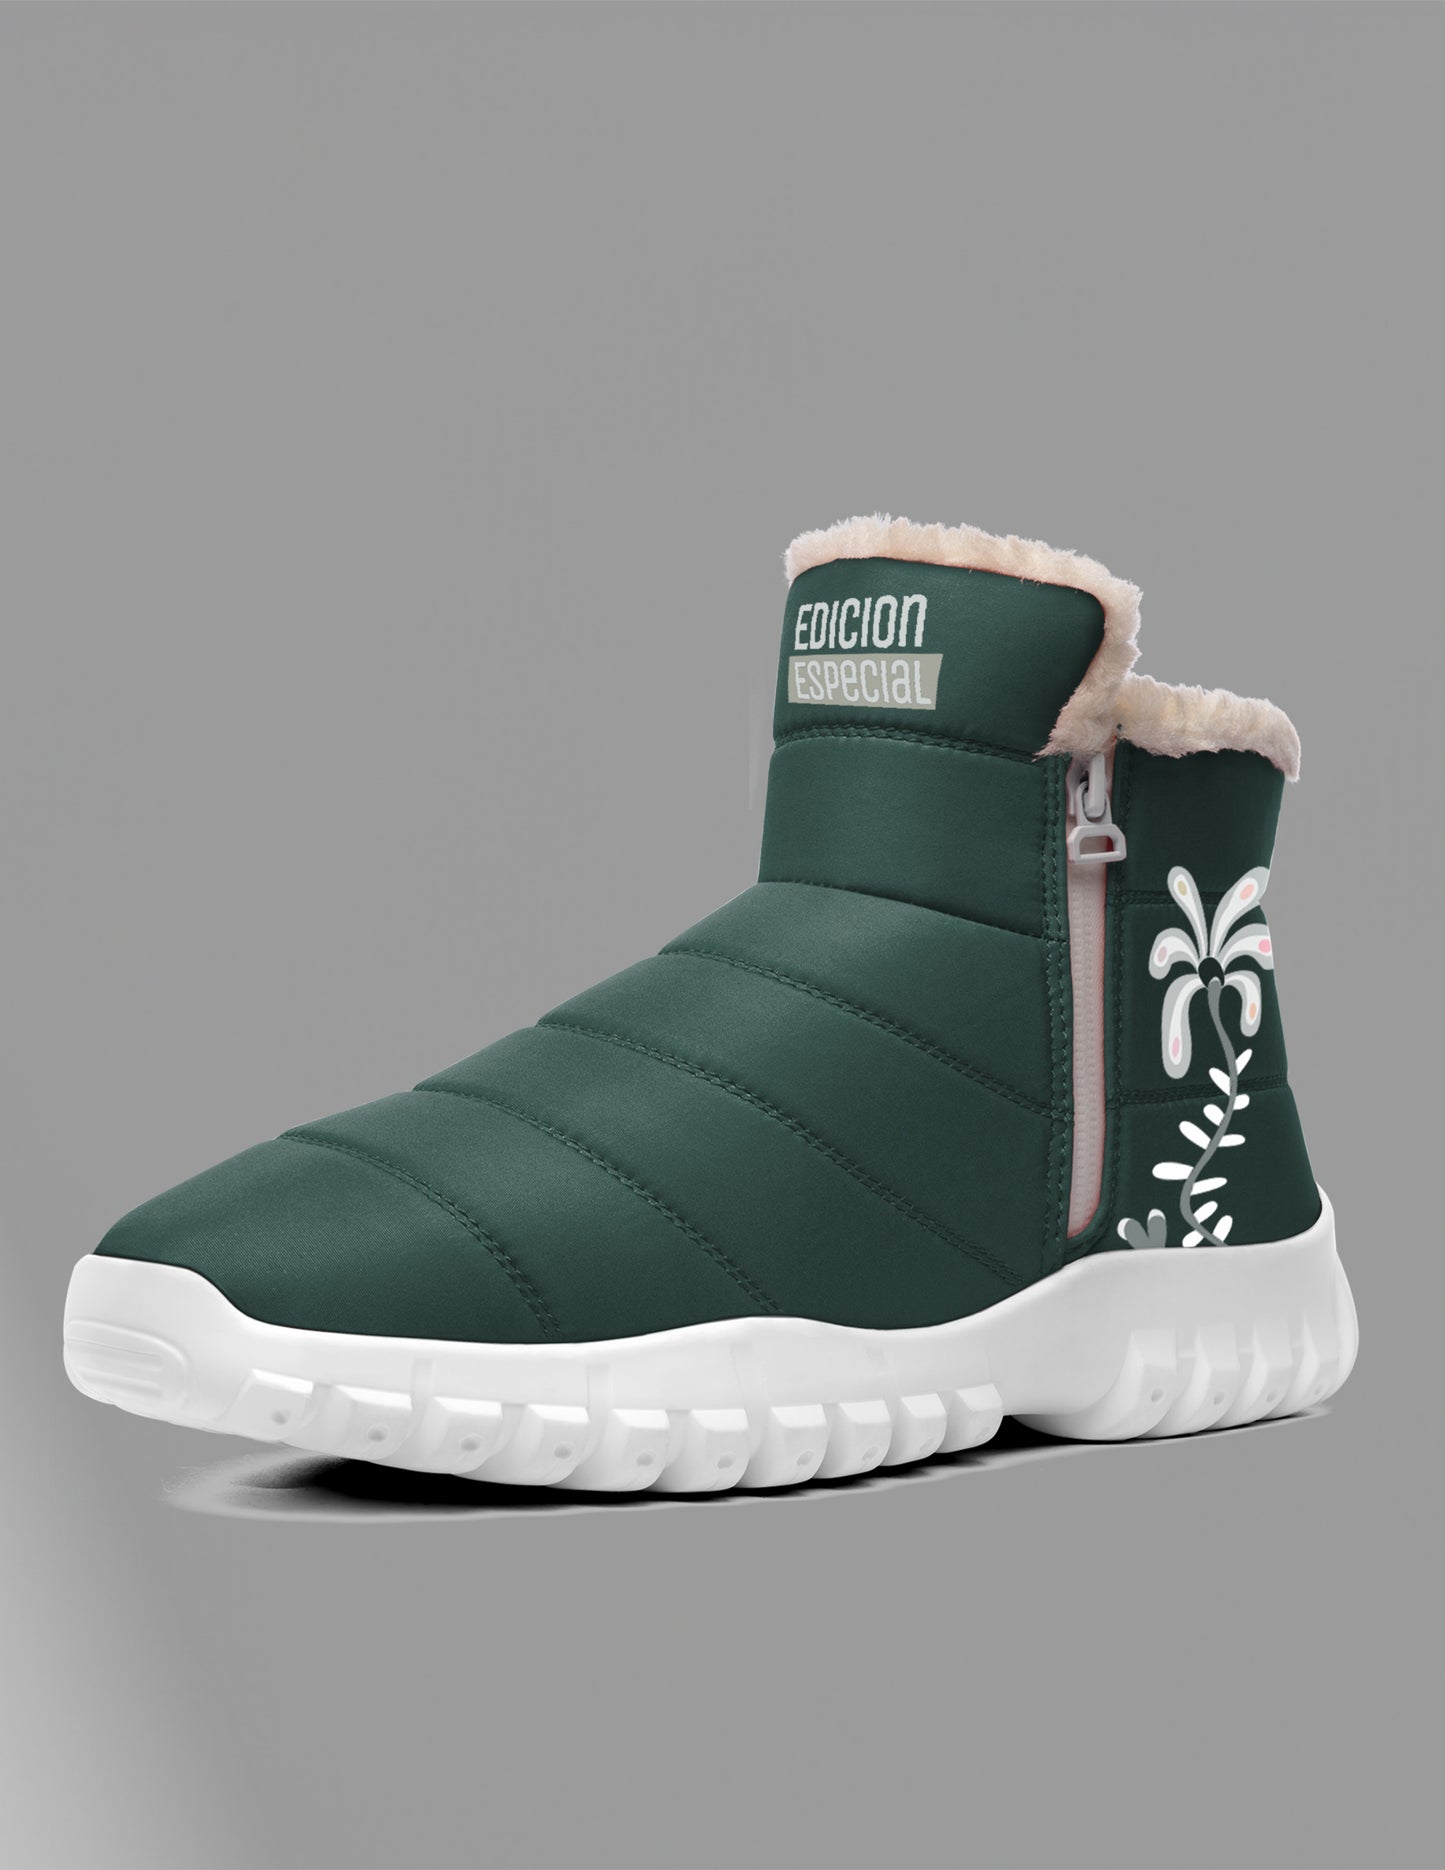 Green winter boots